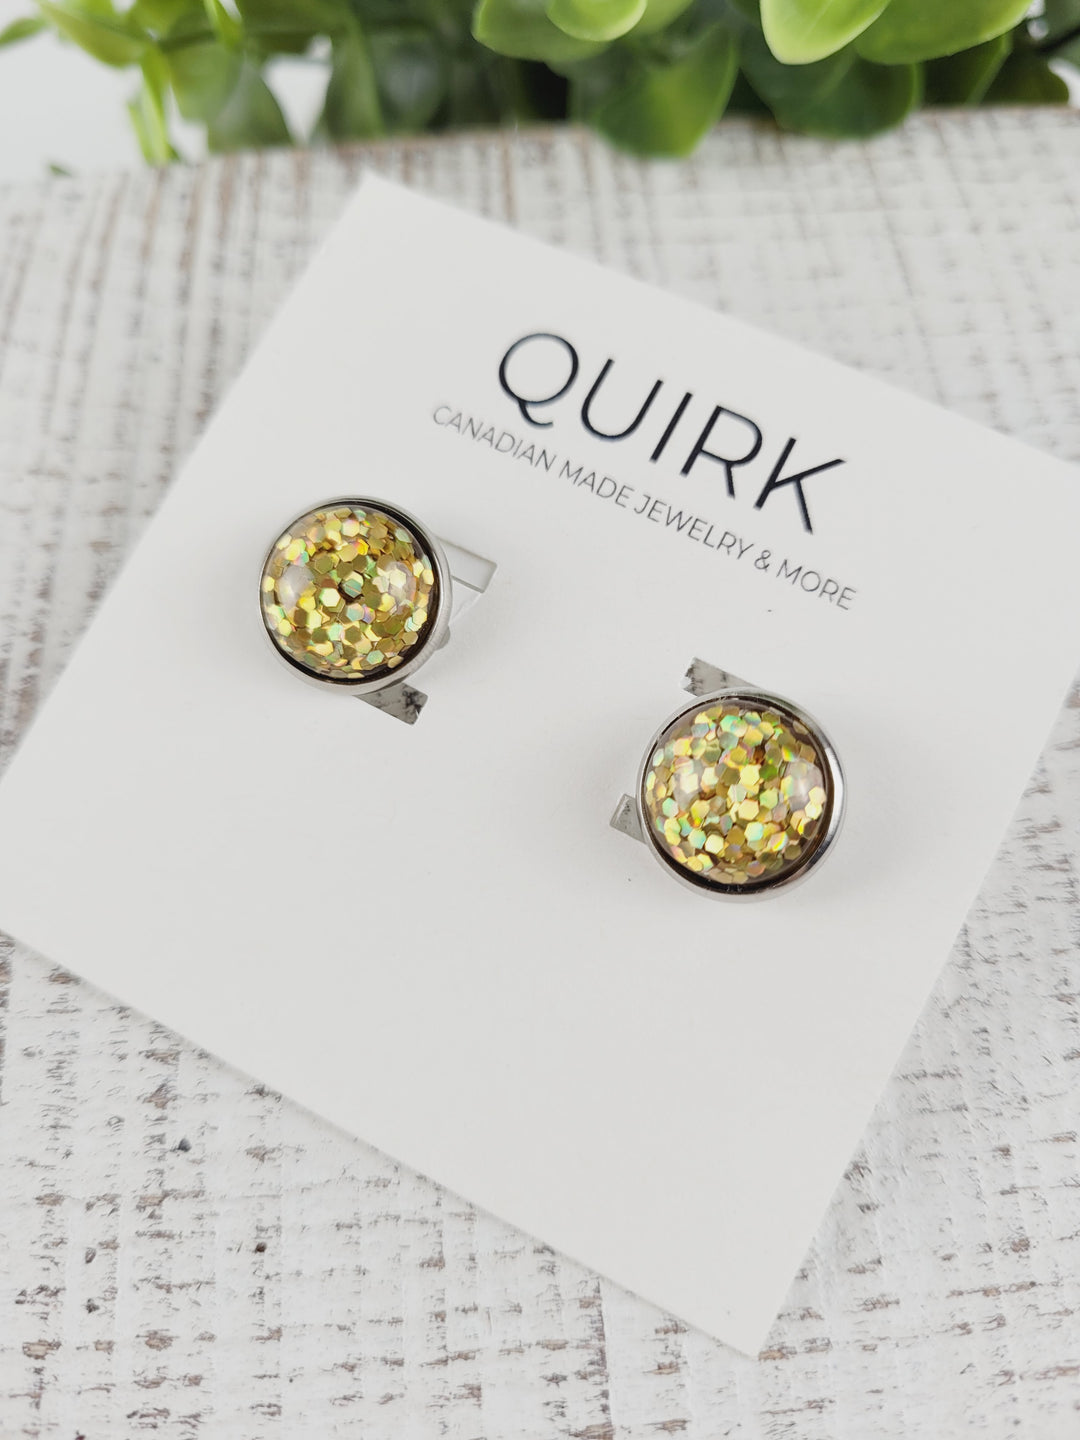 Quirk Handmade Jewelry, Stainless Steel Stud Earrings